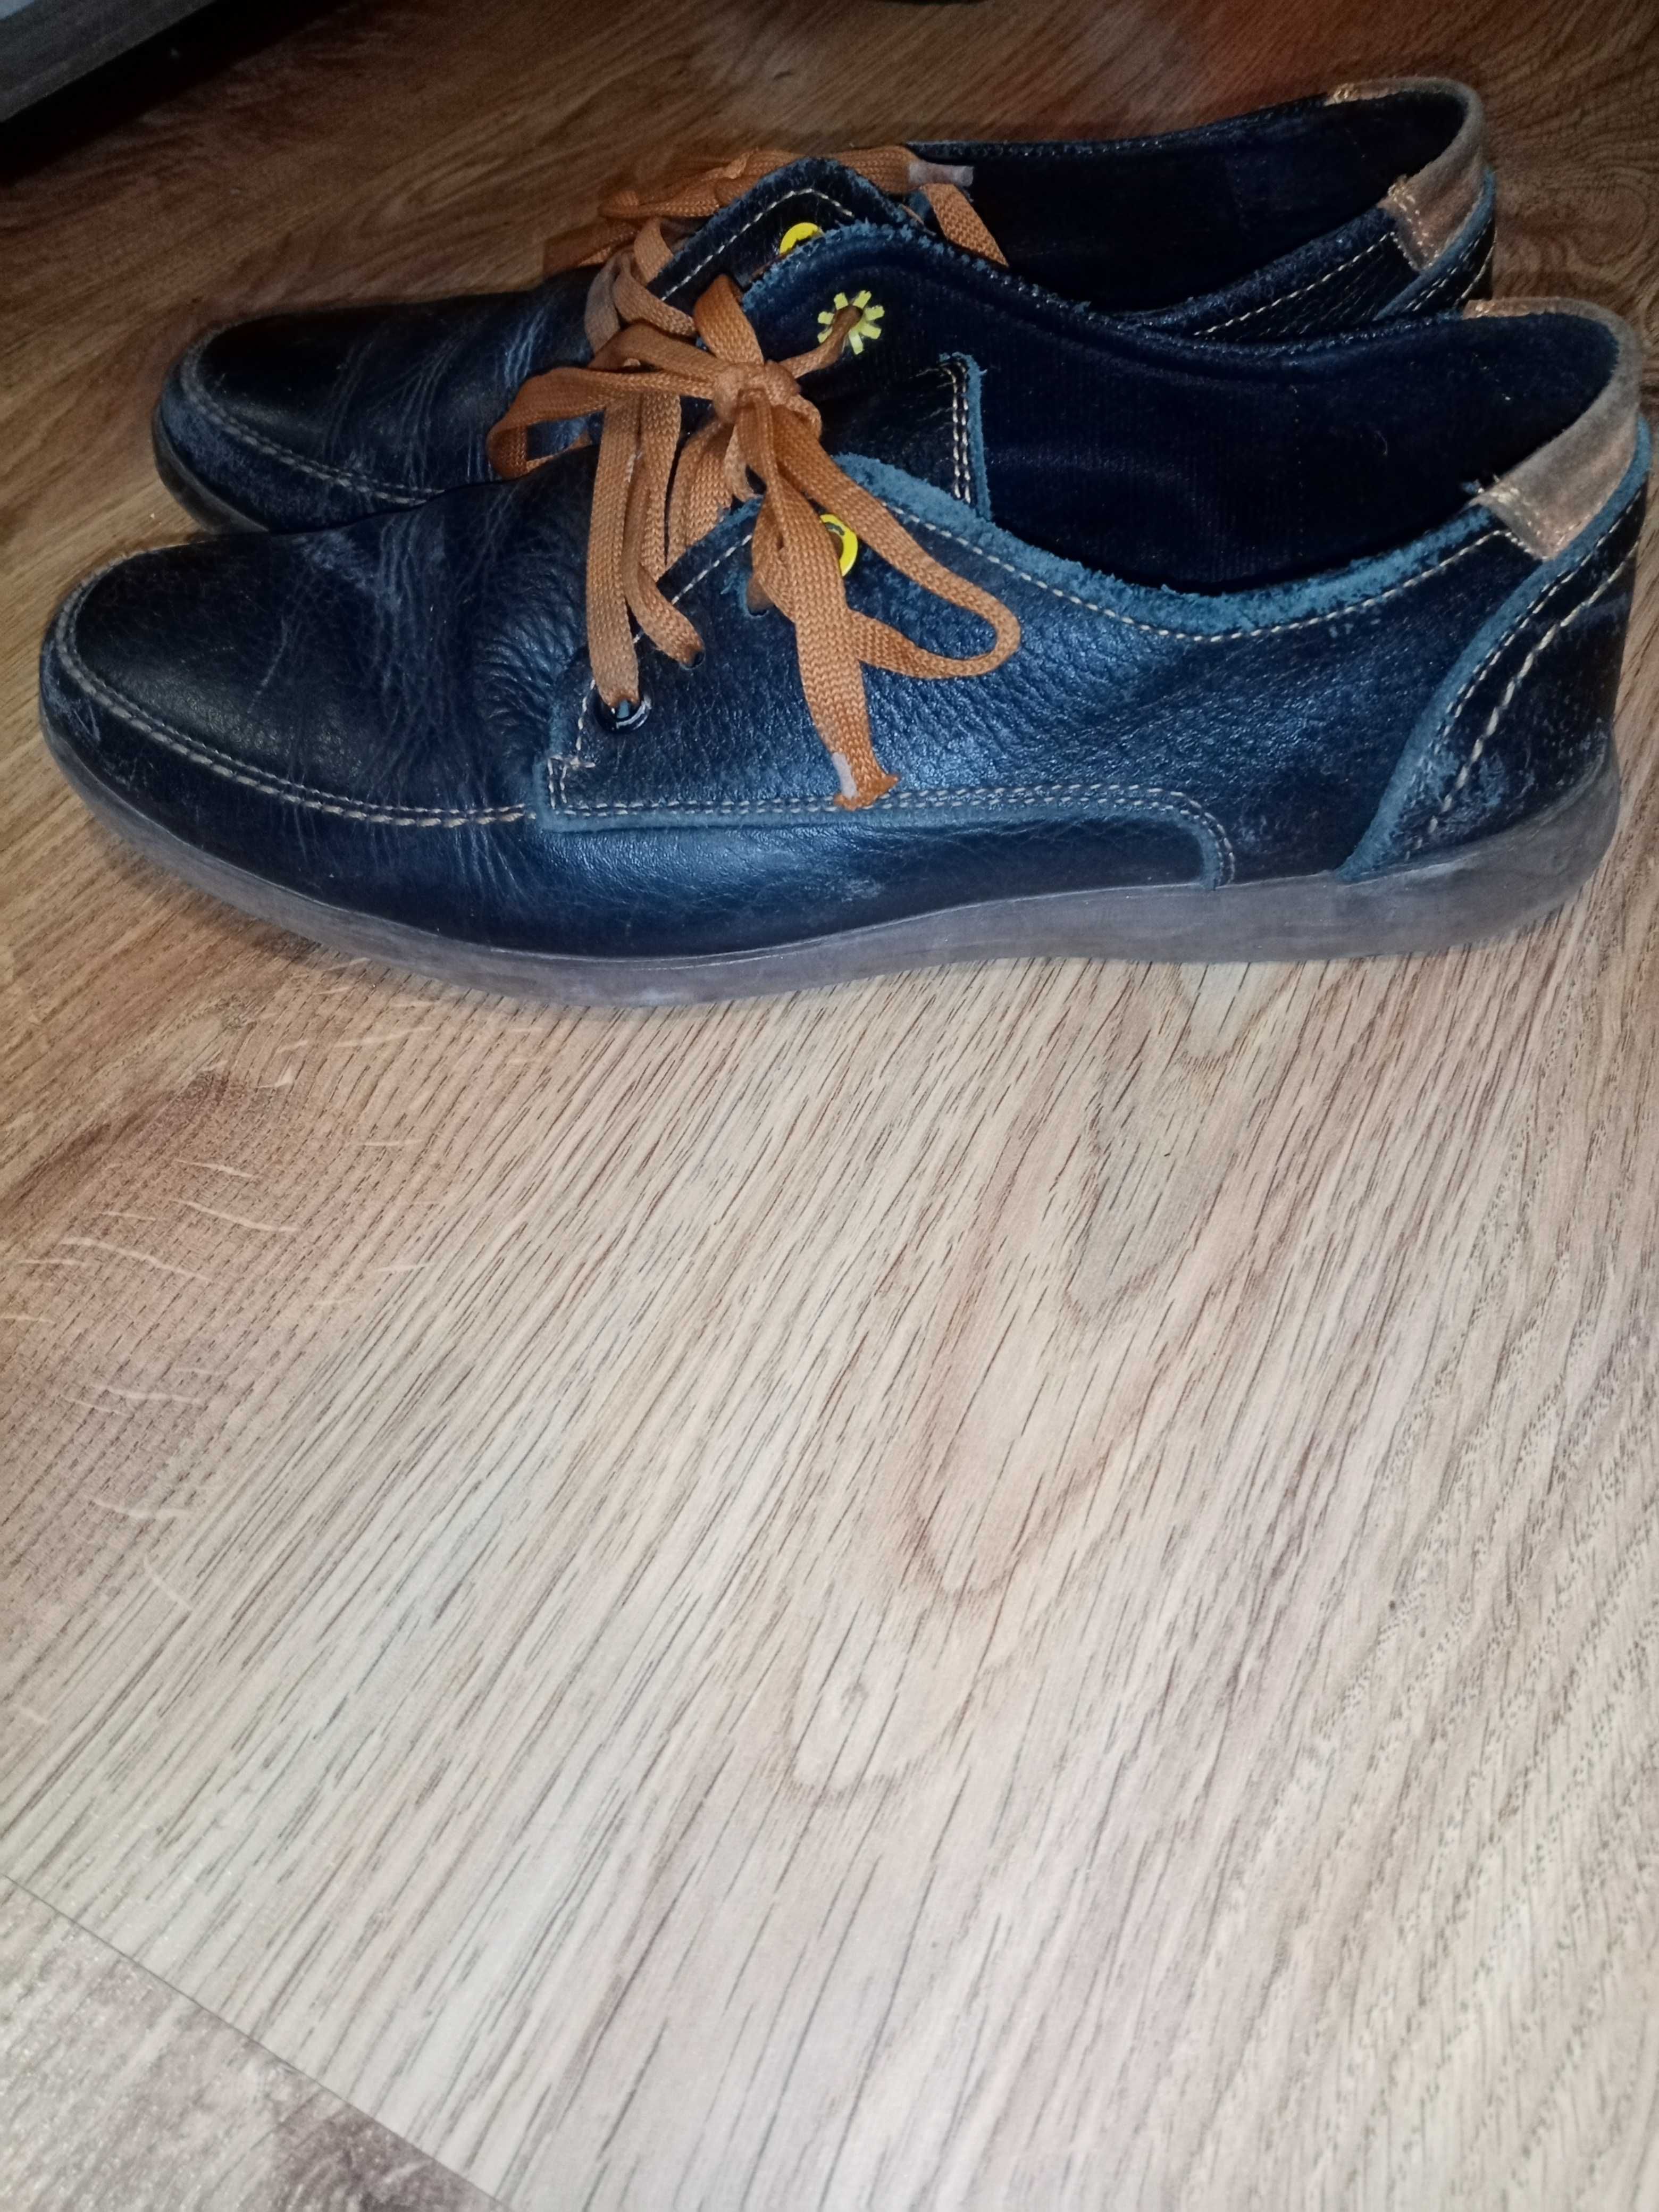 Взуття для хлопчика